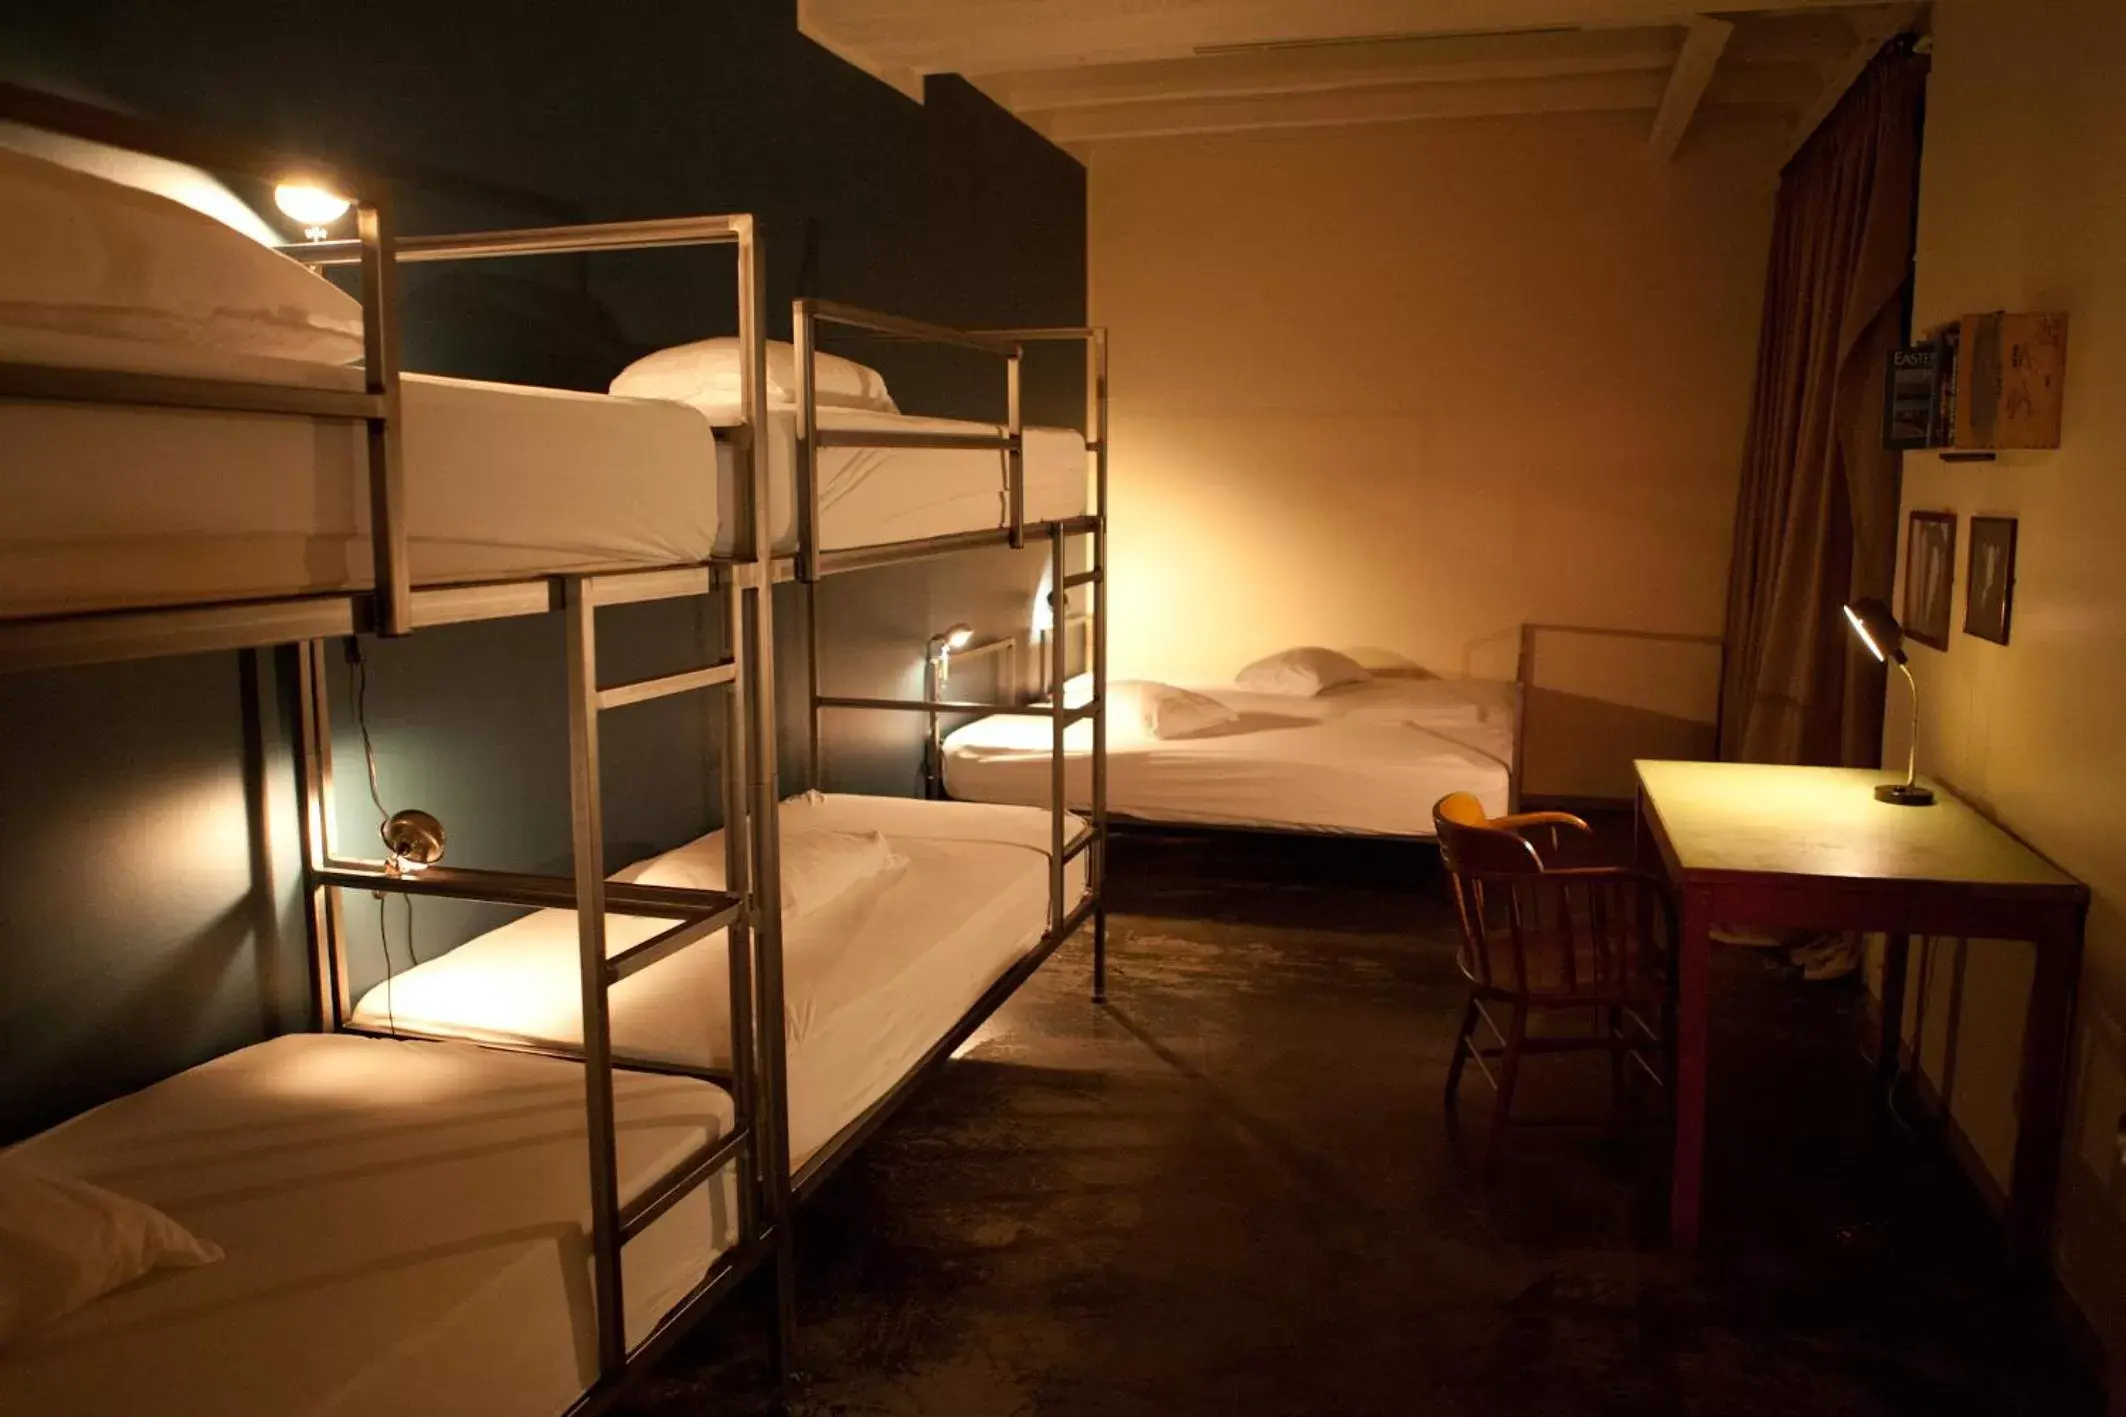 Bedroom, Bunk Bed in Kex Hostel